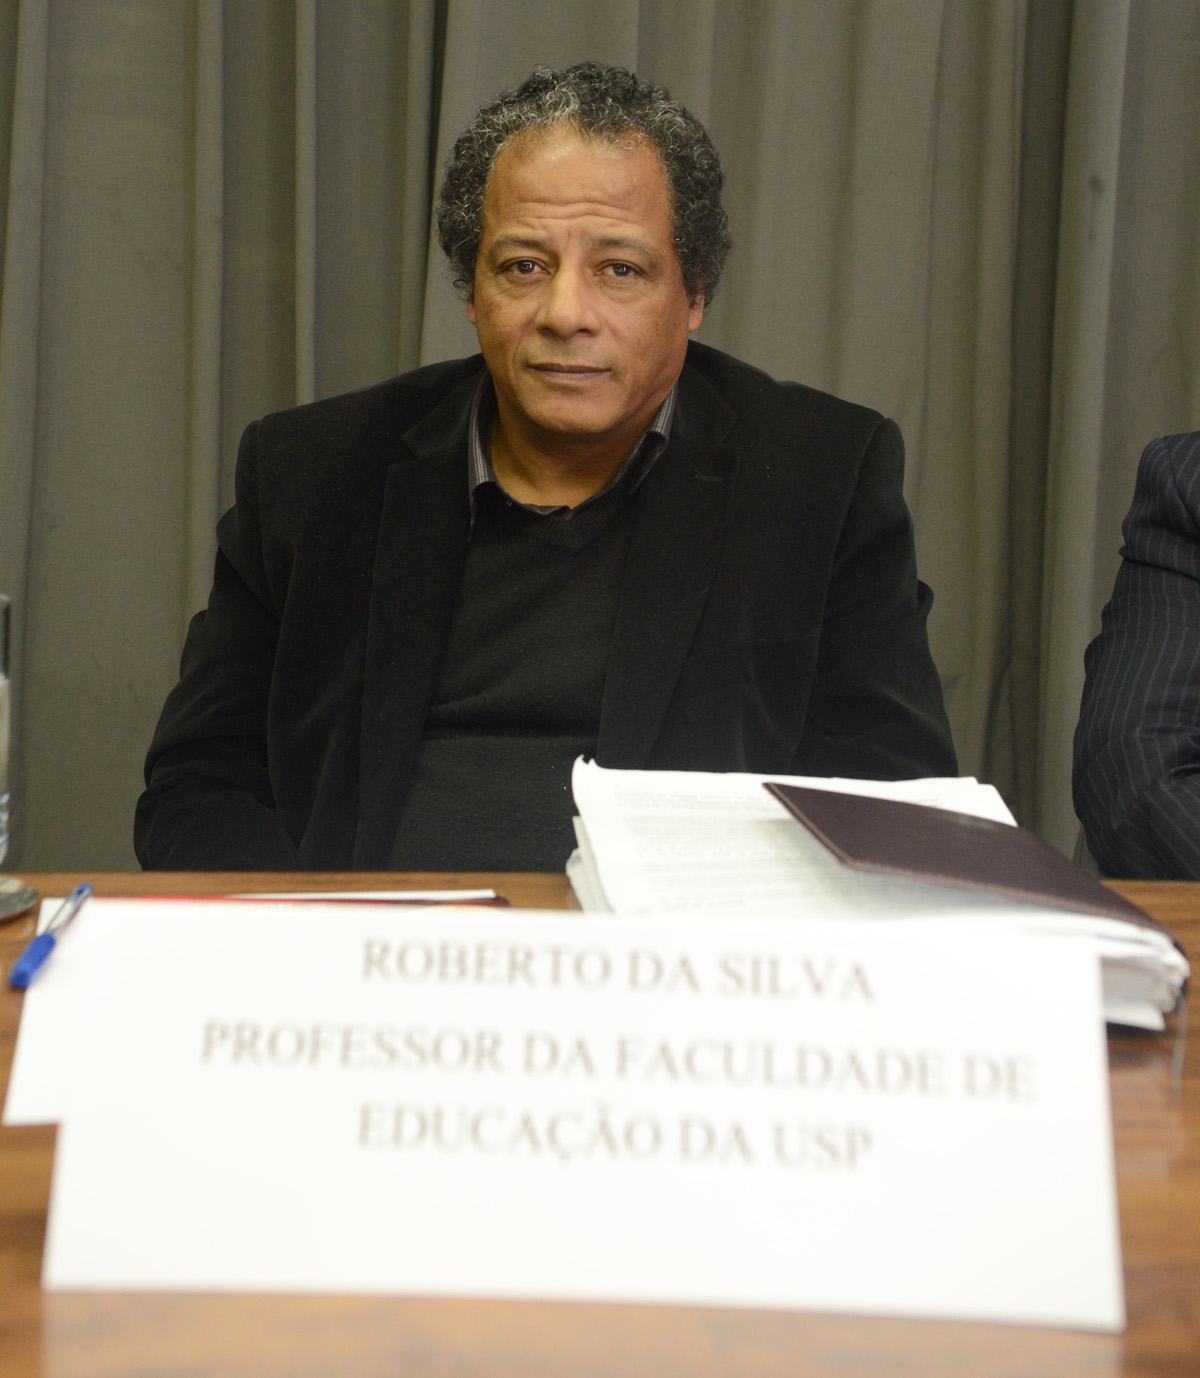 Roberto da Silva, professor da Faculdade de Educao da USP <a style='float:right;color:#ccc' href='https://www3.al.sp.gov.br/repositorio/noticia/N-06-2013/fg127258.jpg' target=_blank><i class='bi bi-zoom-in'></i> Clique para ver a imagem </a>